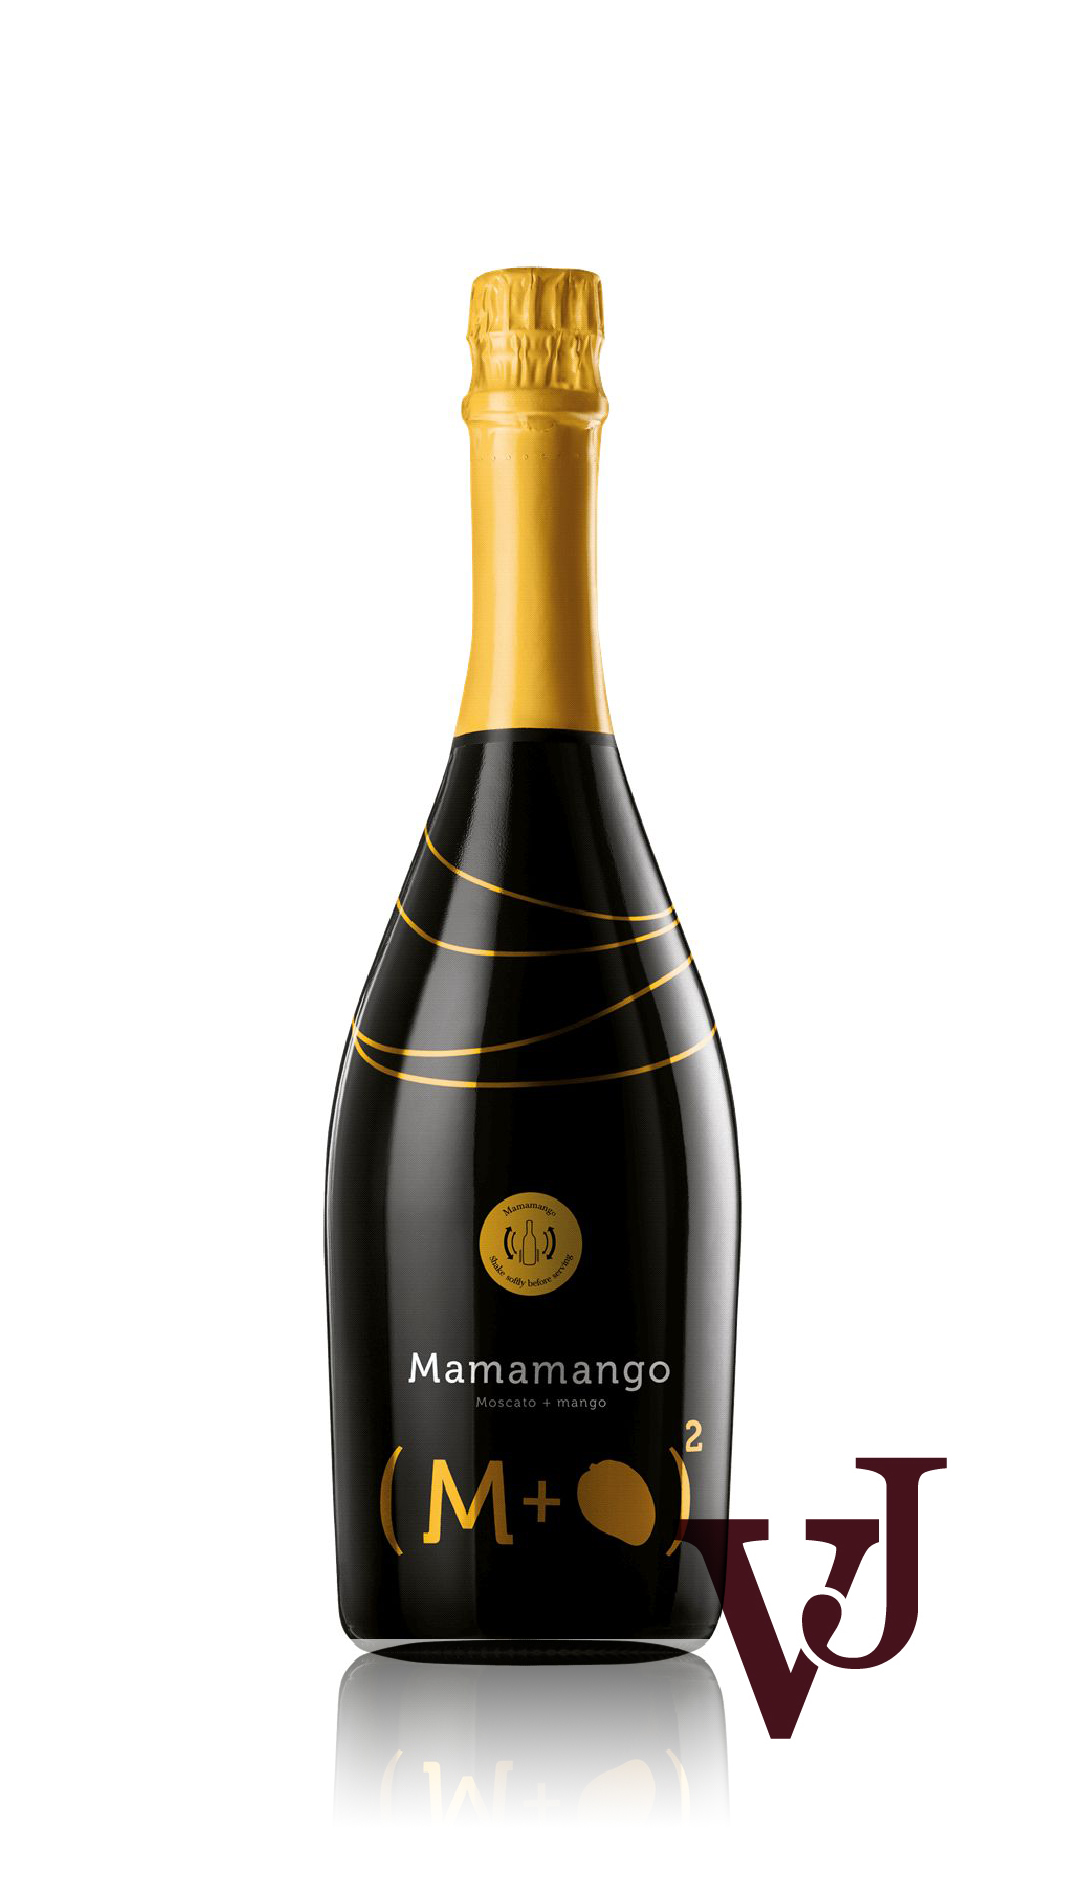 Mousserande Vin - Mamamango artikel nummer 7773801 från producenten Arione från området Italien